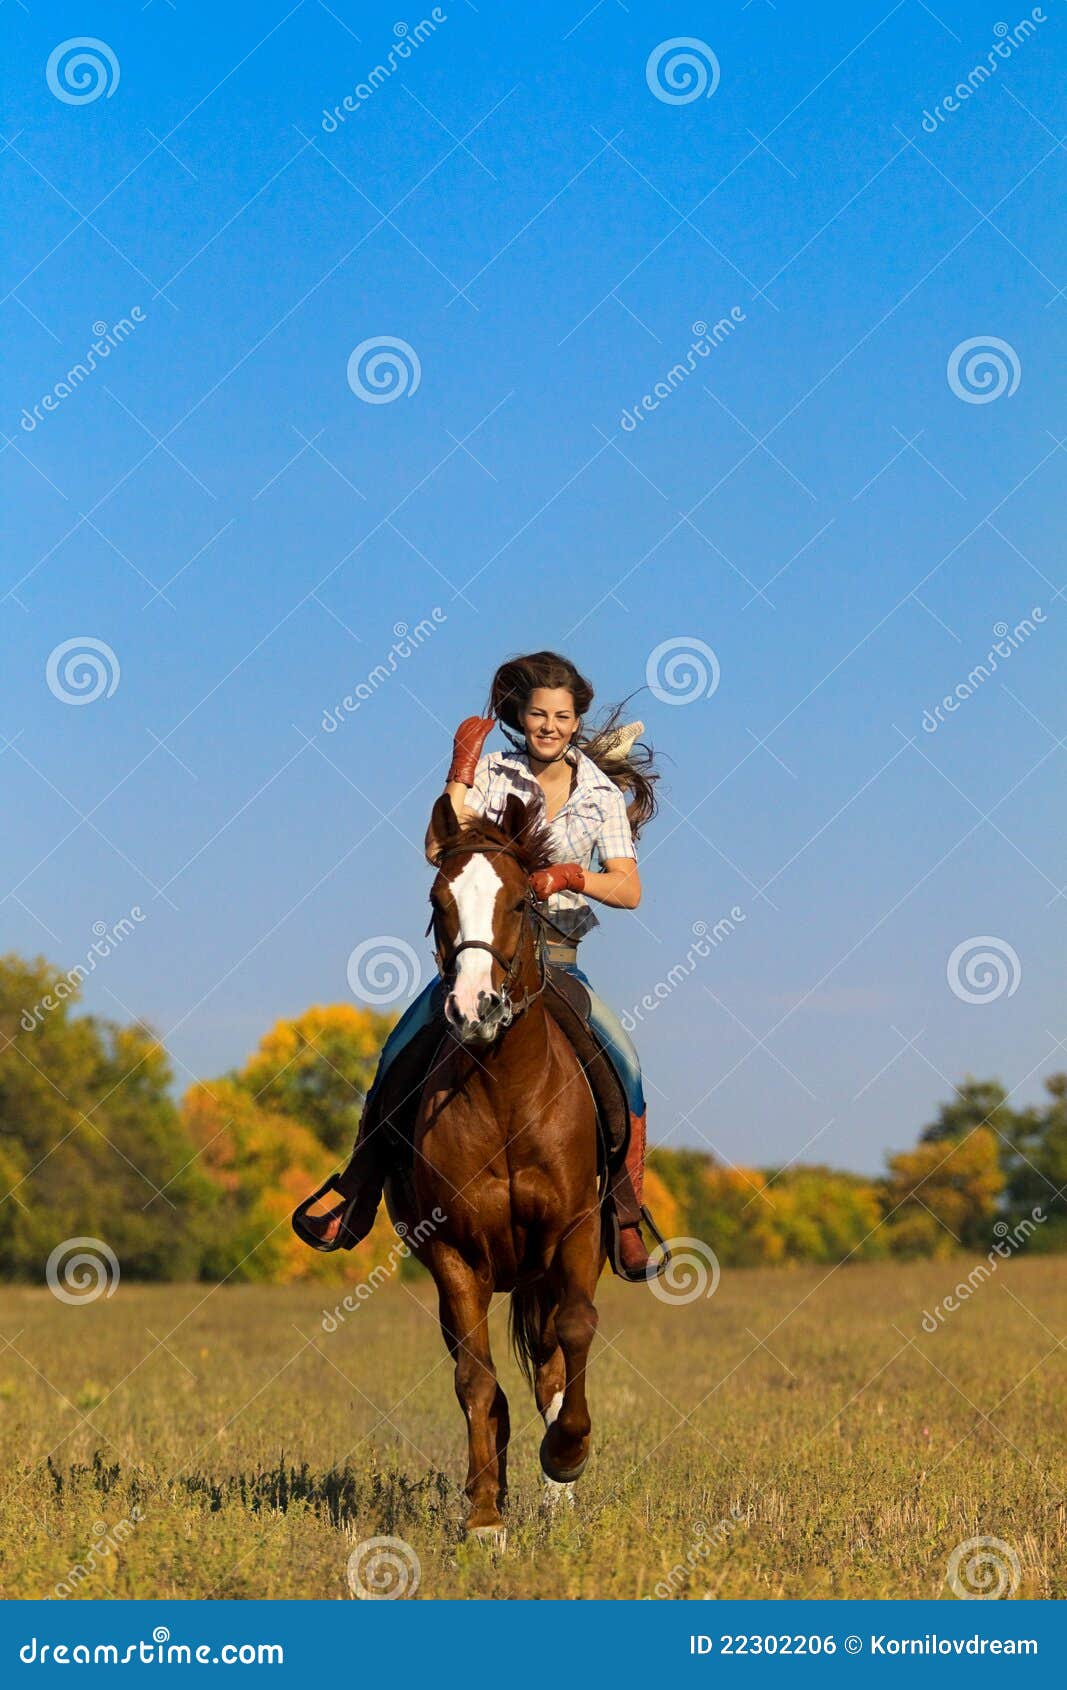 女孩马骑术年轻人 库存图片. 图片 包括有 年轻, 女孩, 骑马, 母马, 车手, 小跑, 小跑步马, 农田 - 14612713